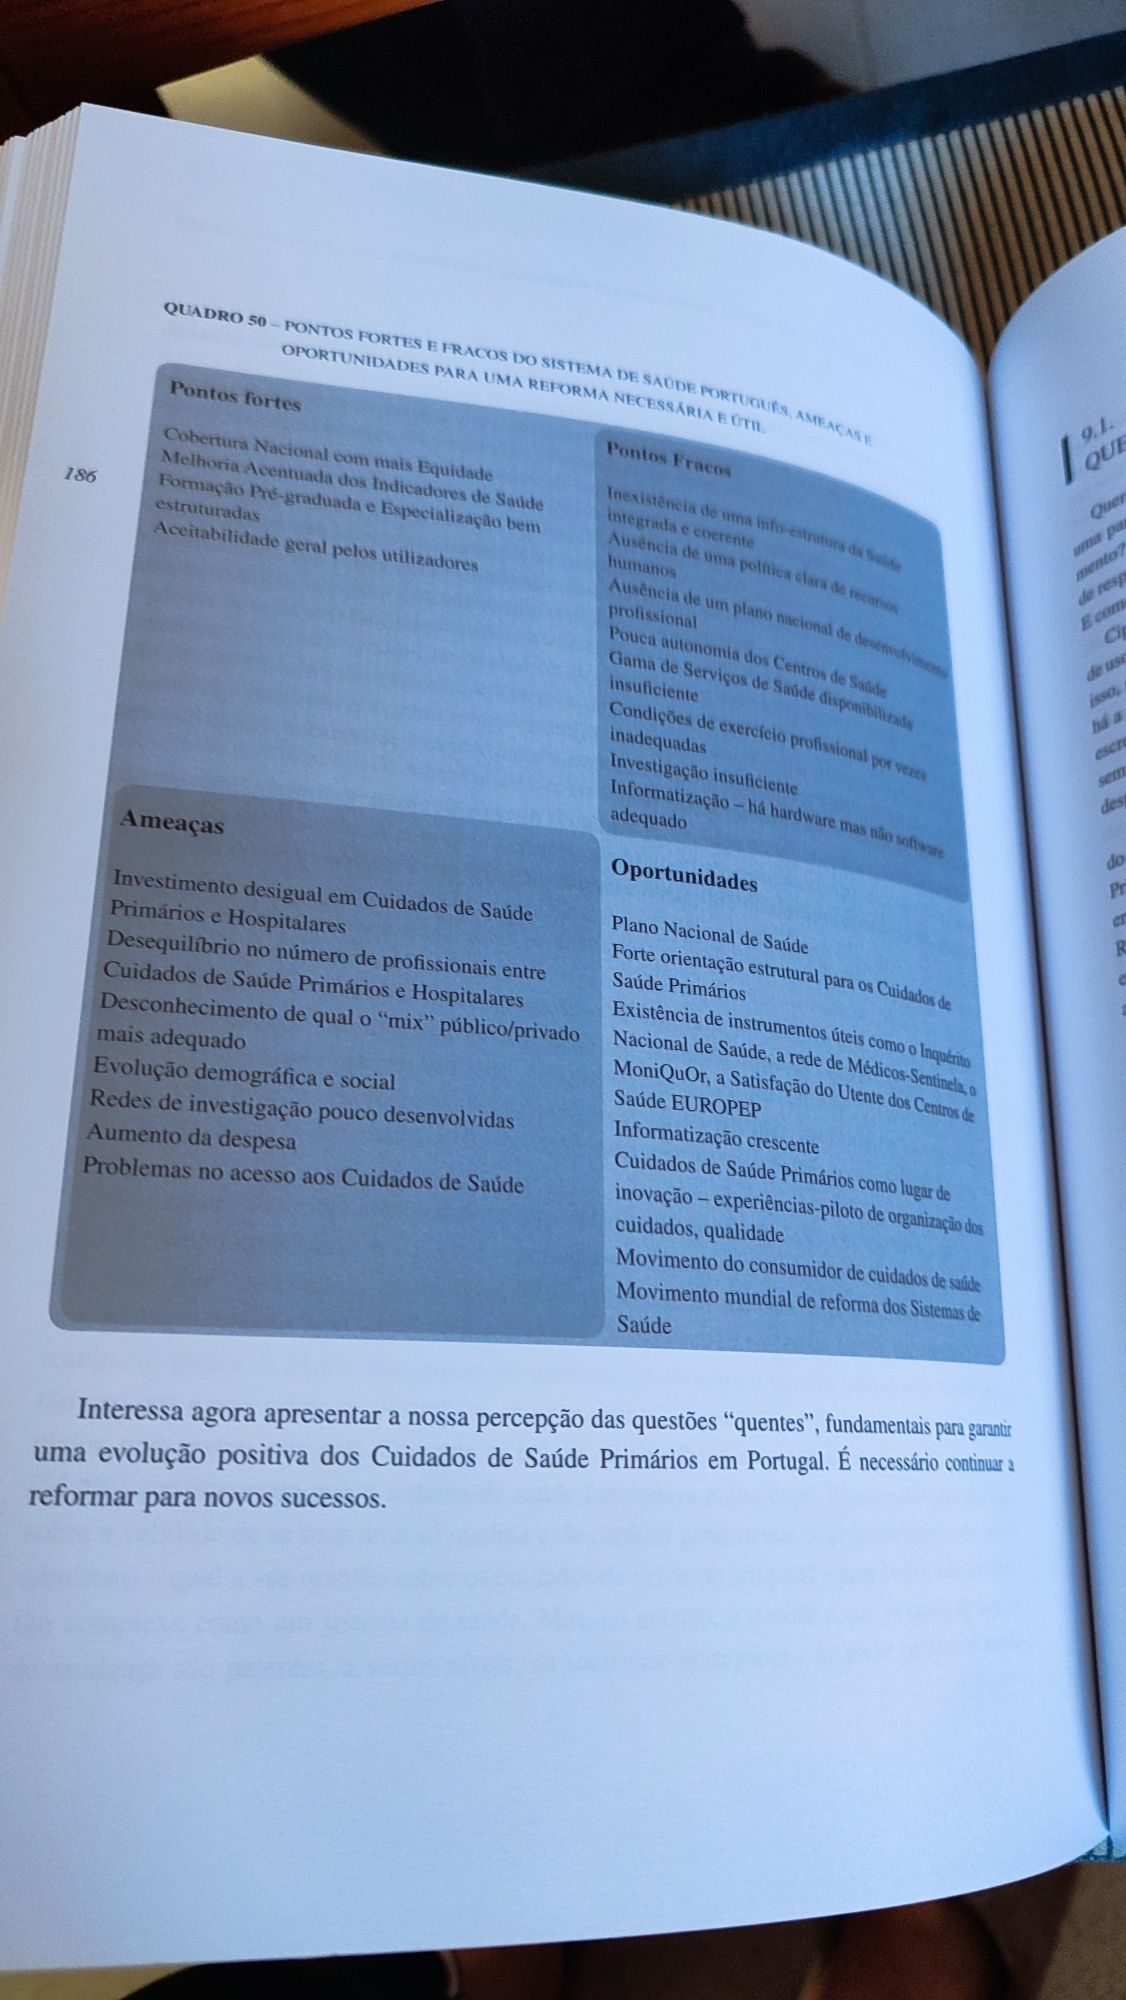 Livro "Cuidados de Saúde Primários em Portugal"